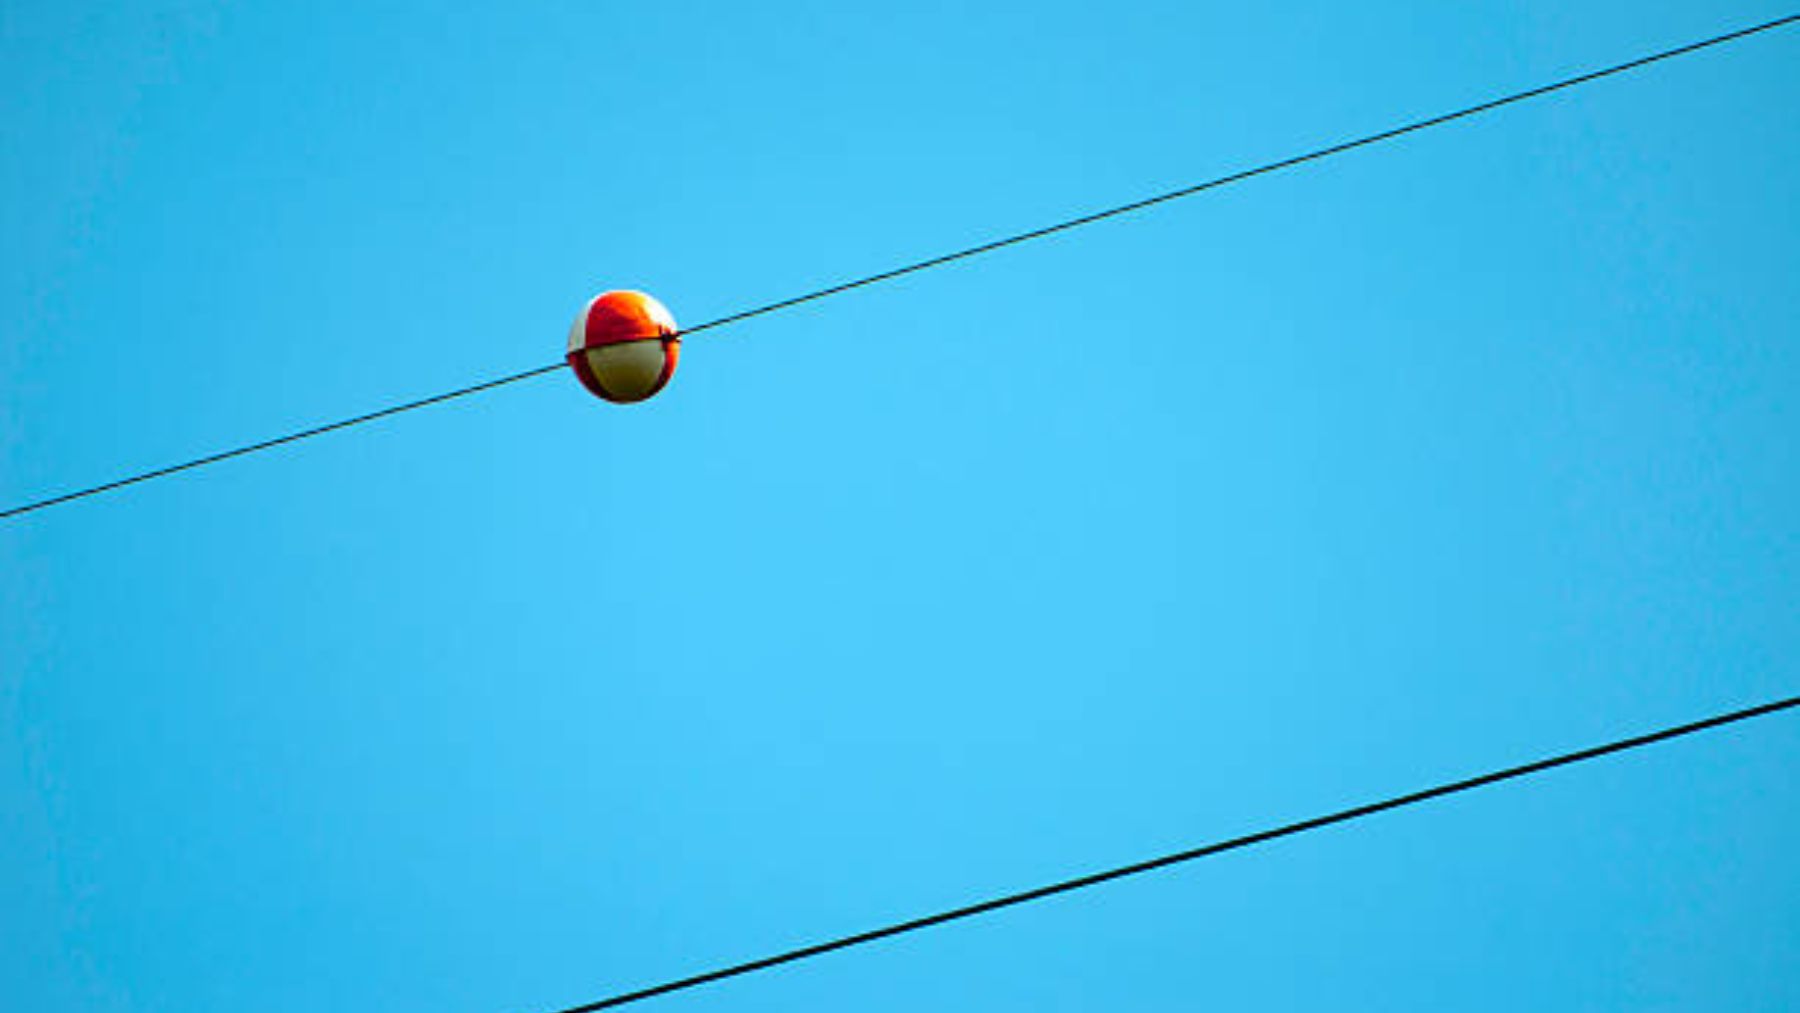 Descubre el significado de las bolas rojas en los cables de alta tensión